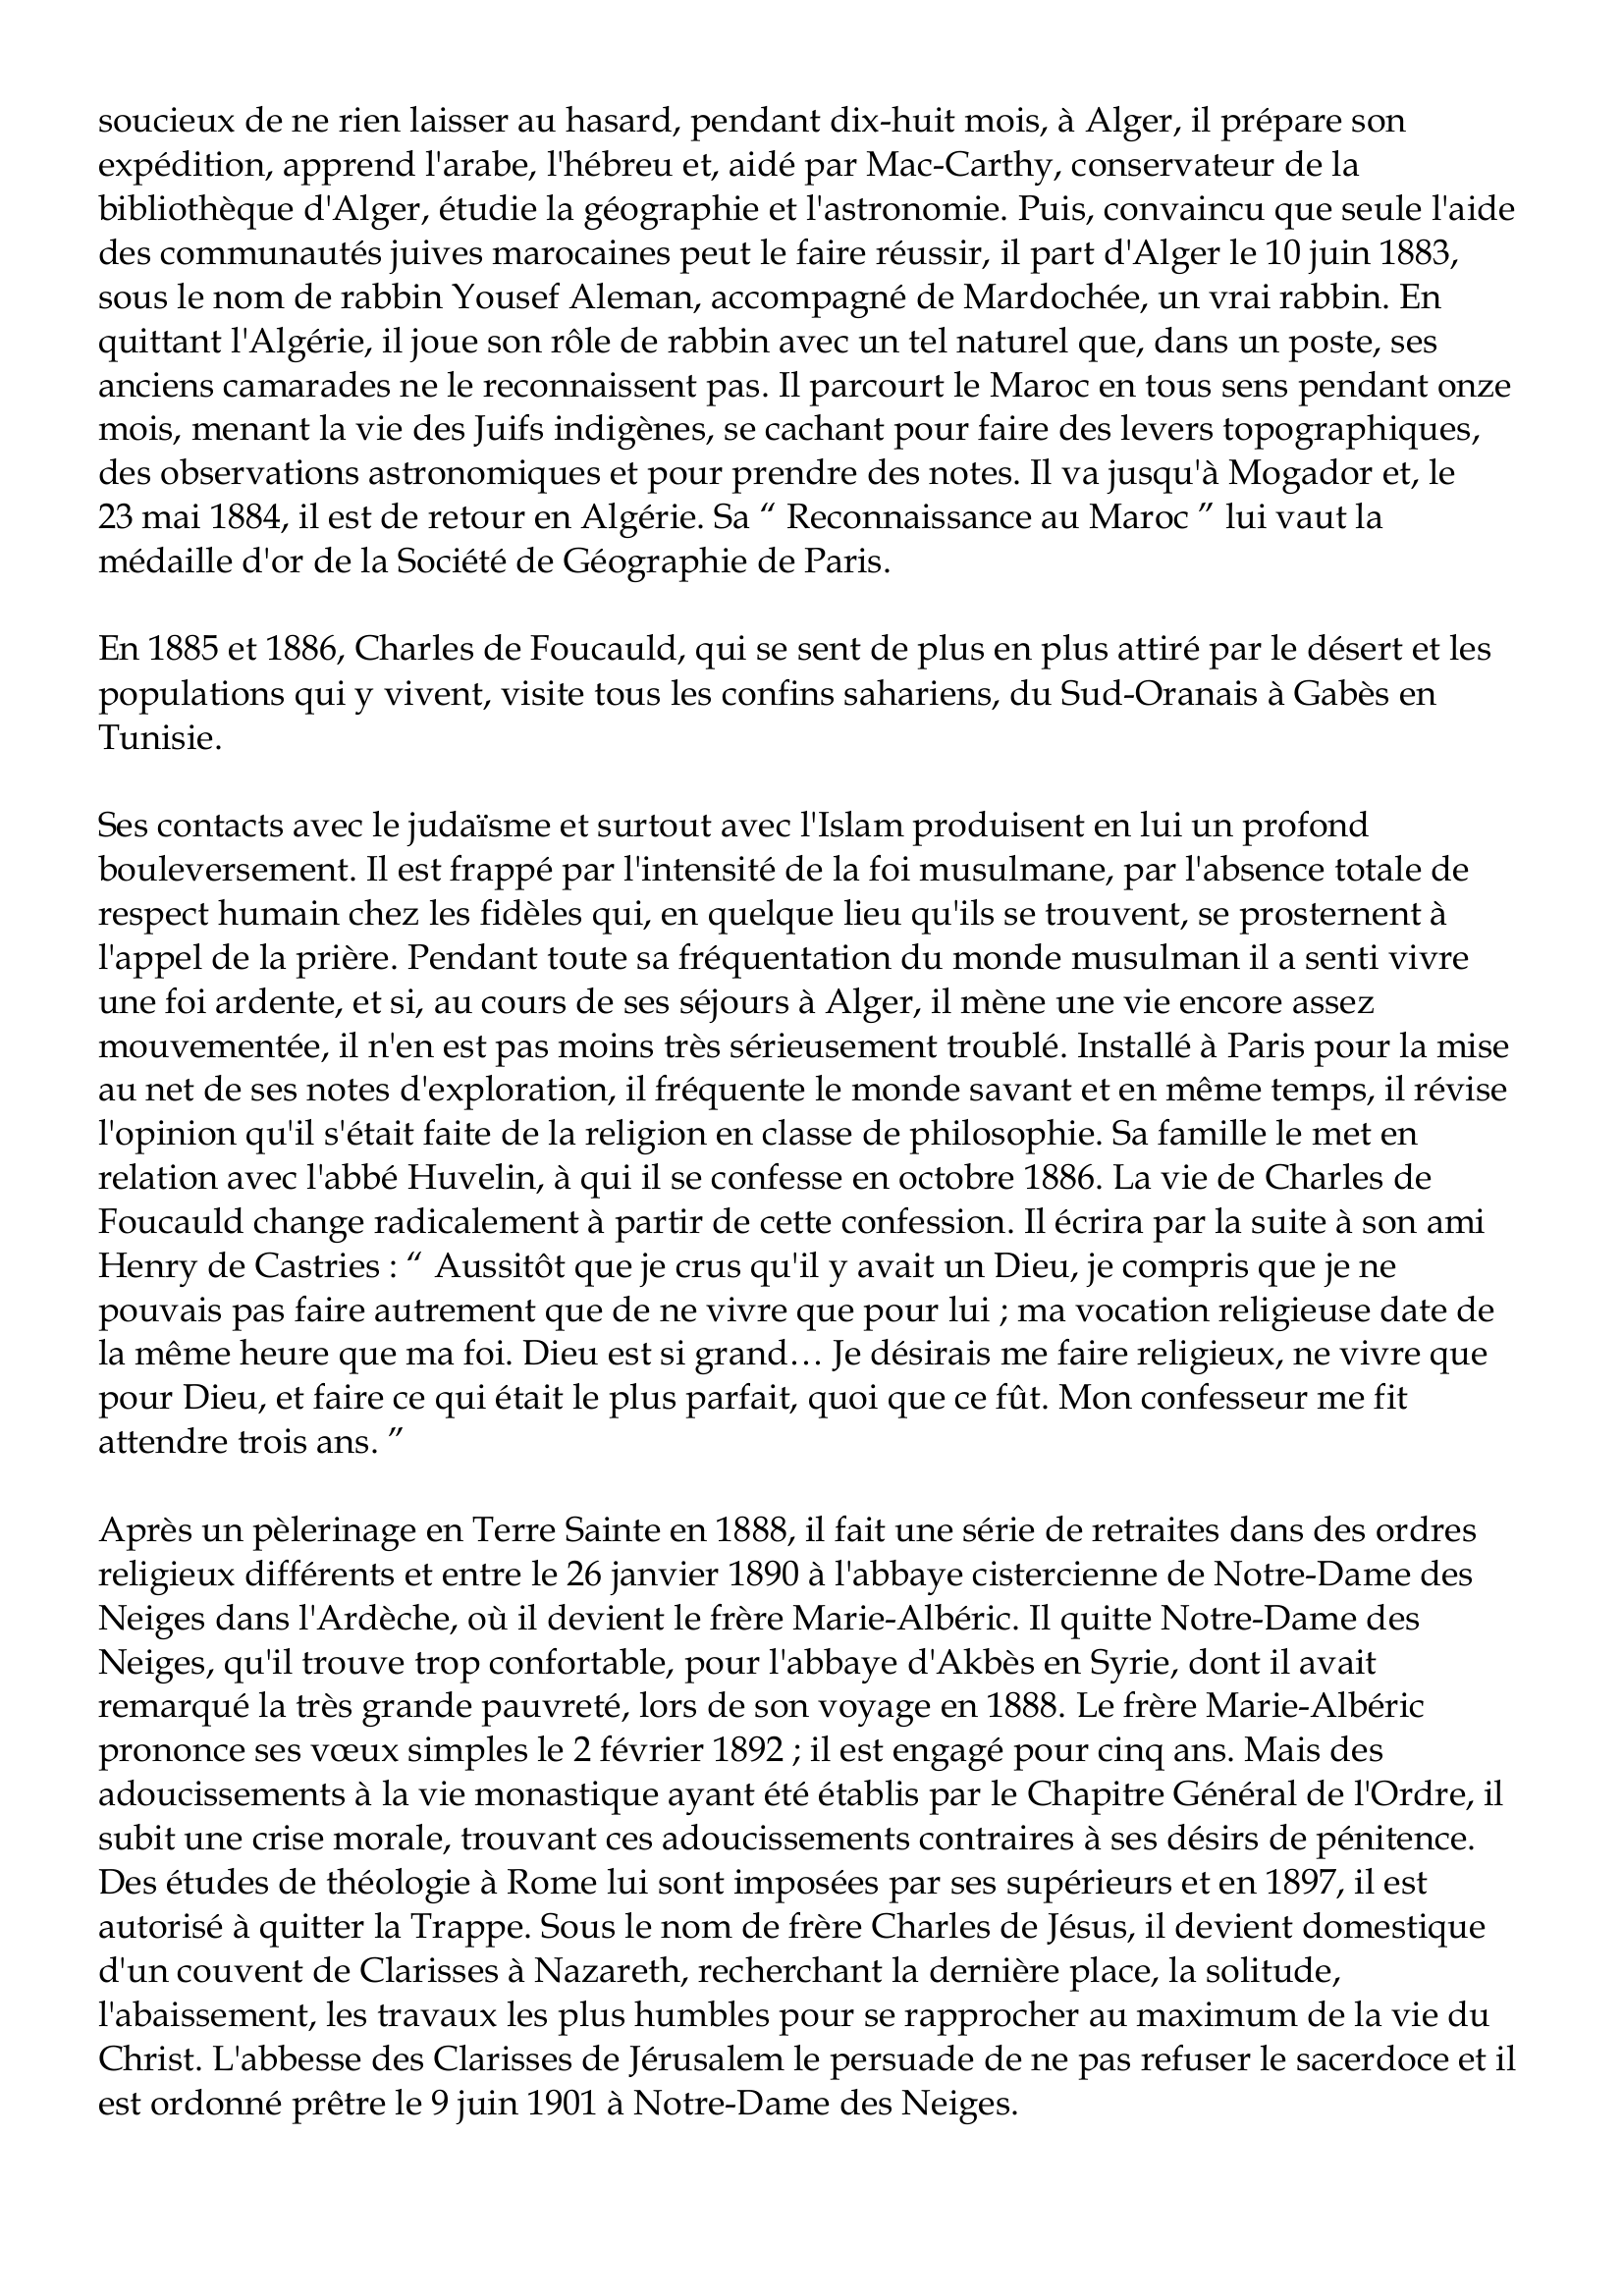 Prévisualisation du document Charles-Eugène de Foucauld de Pontbriand
1858-1916
Charles Eugène de Foucauld de Pontbriand naît à Strasbourg le 15 septembre 1858, dans
une famille riche et pieuse, de vieille noblesse périgourdine.